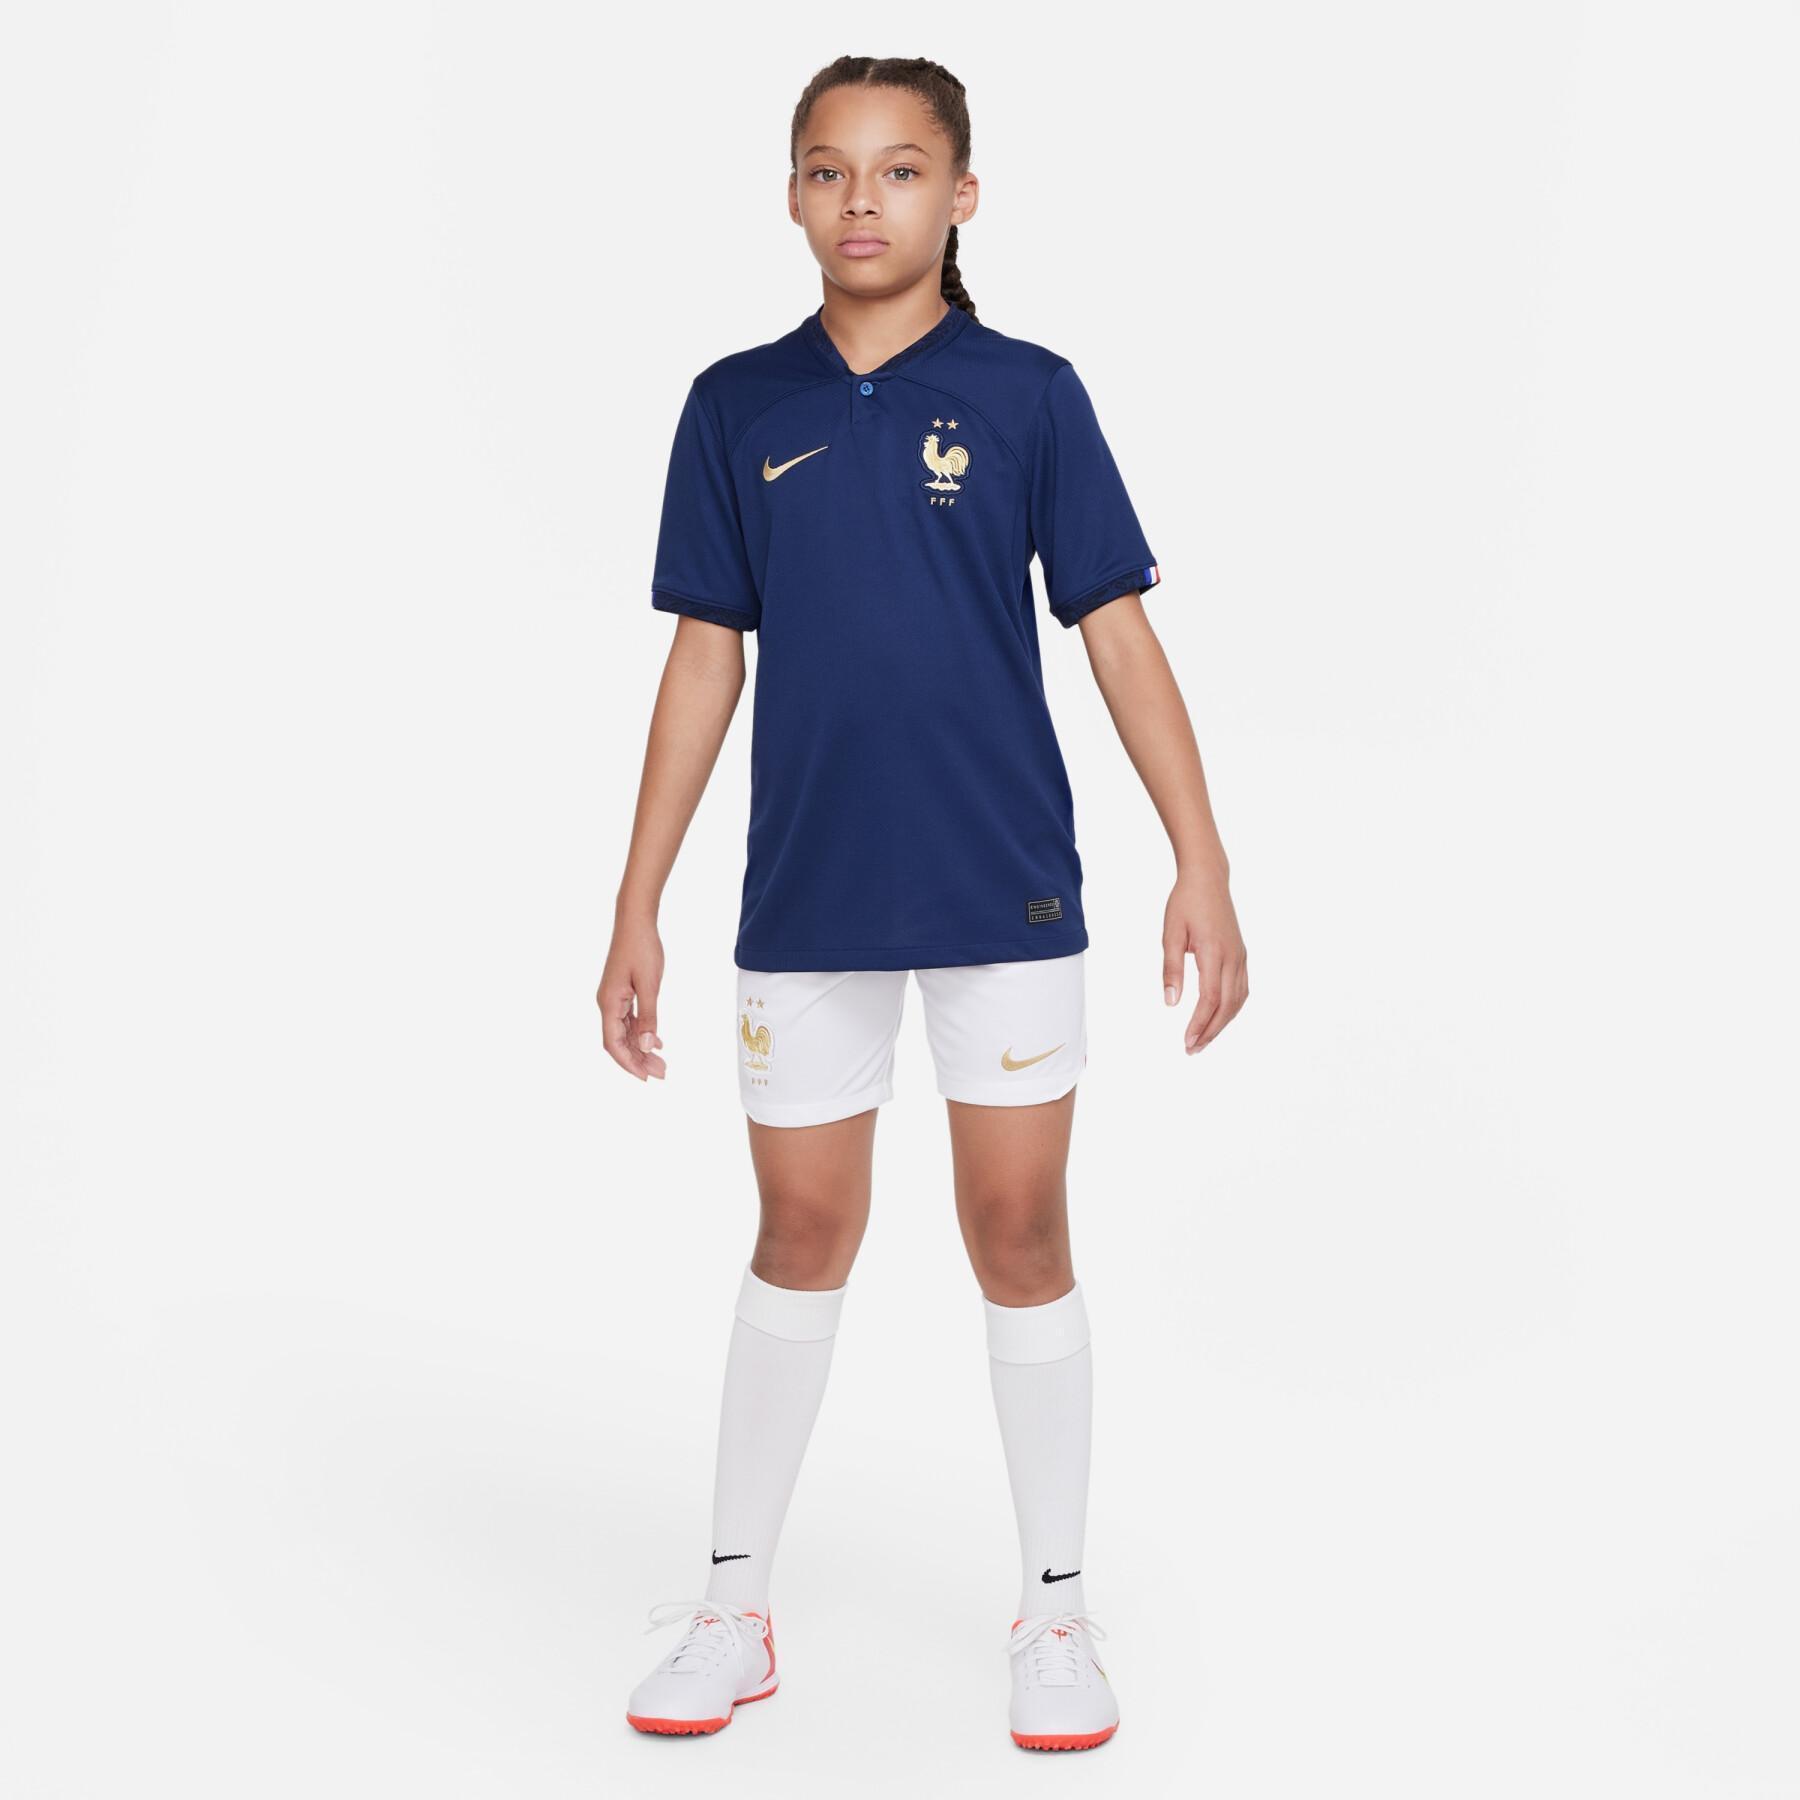 Kindertehuis shorts WK 2022 France